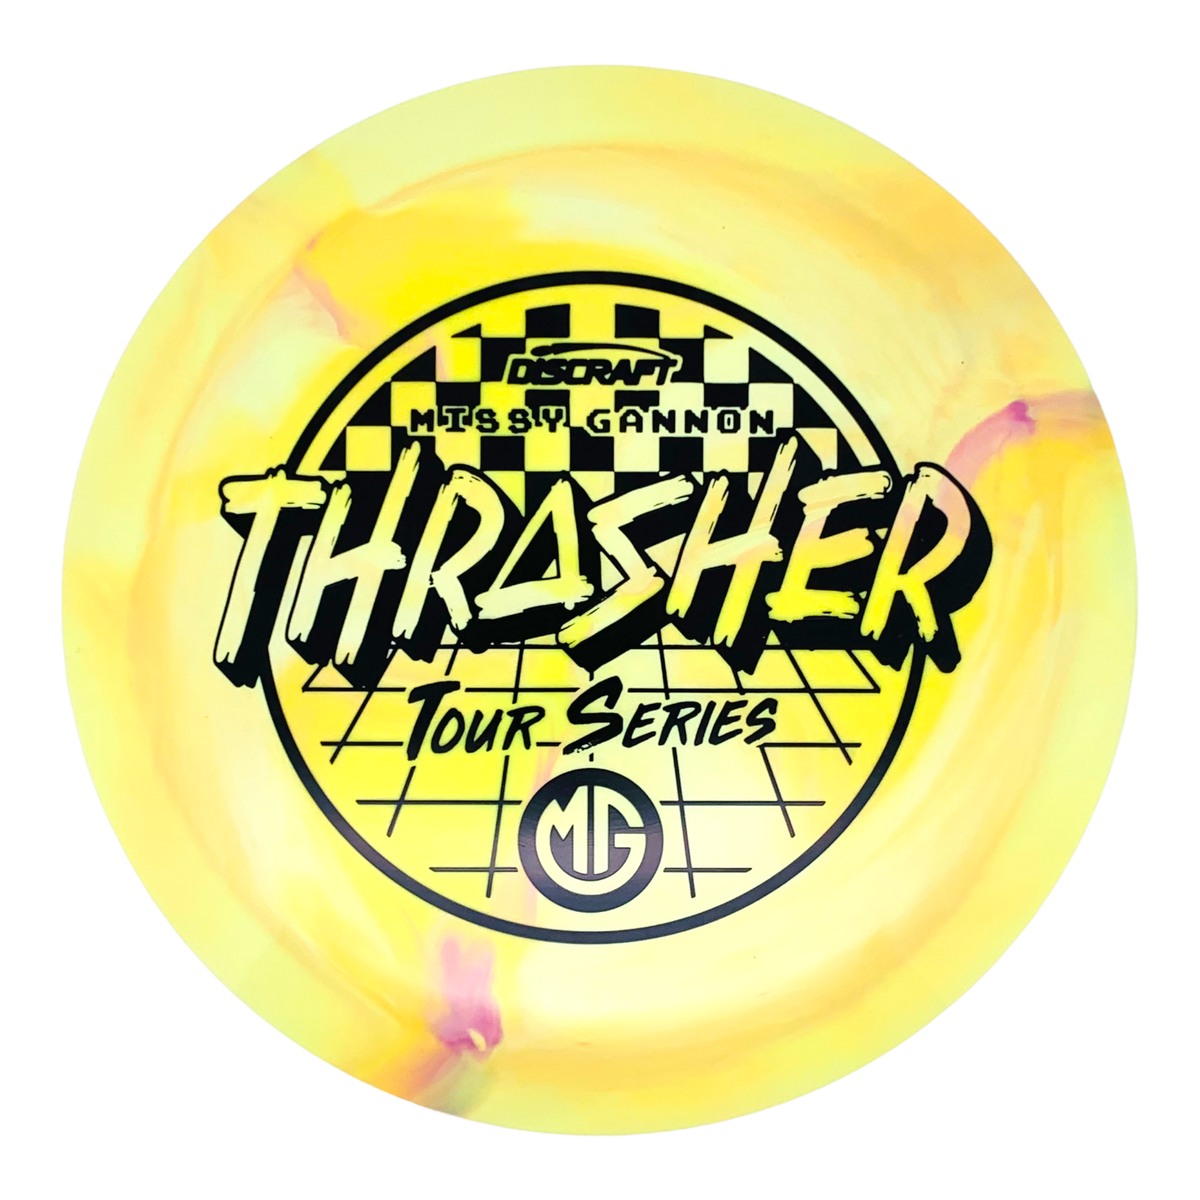 Discraft Missy Gannon ESP Swirl Thrasher - 2022 Tour Series